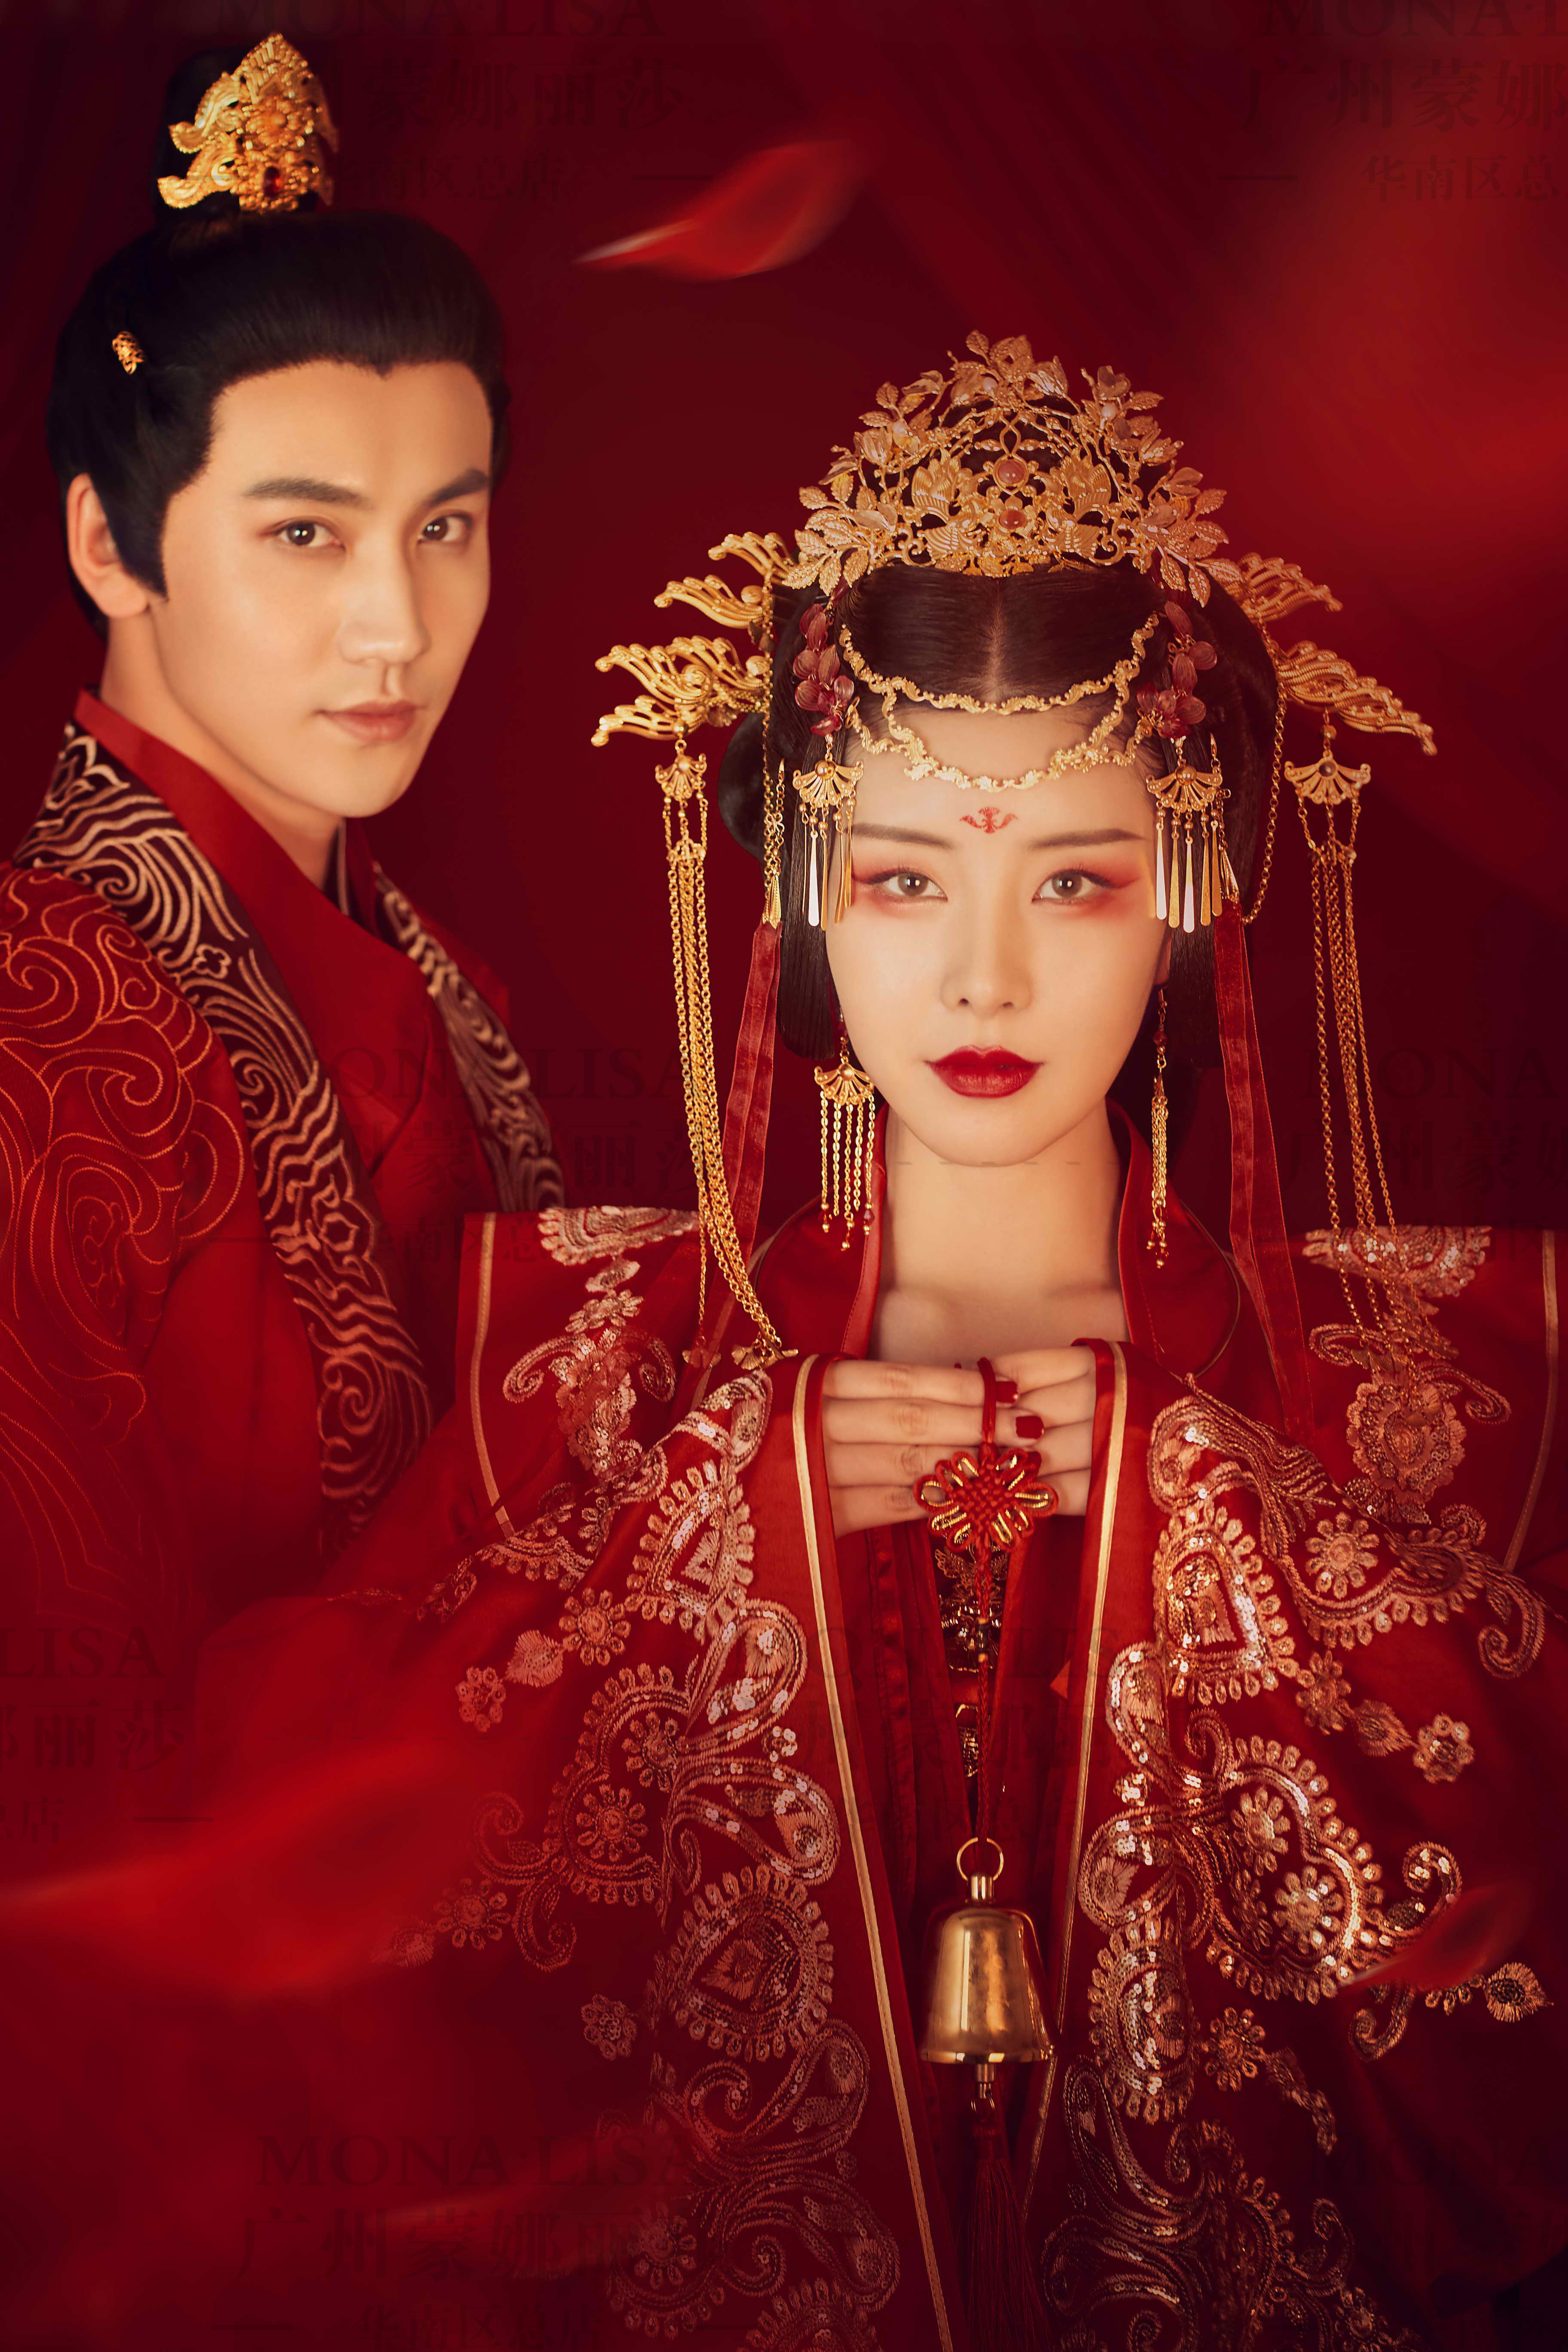 中式古风仪式感婚纱照醉婚宴,闹洞房